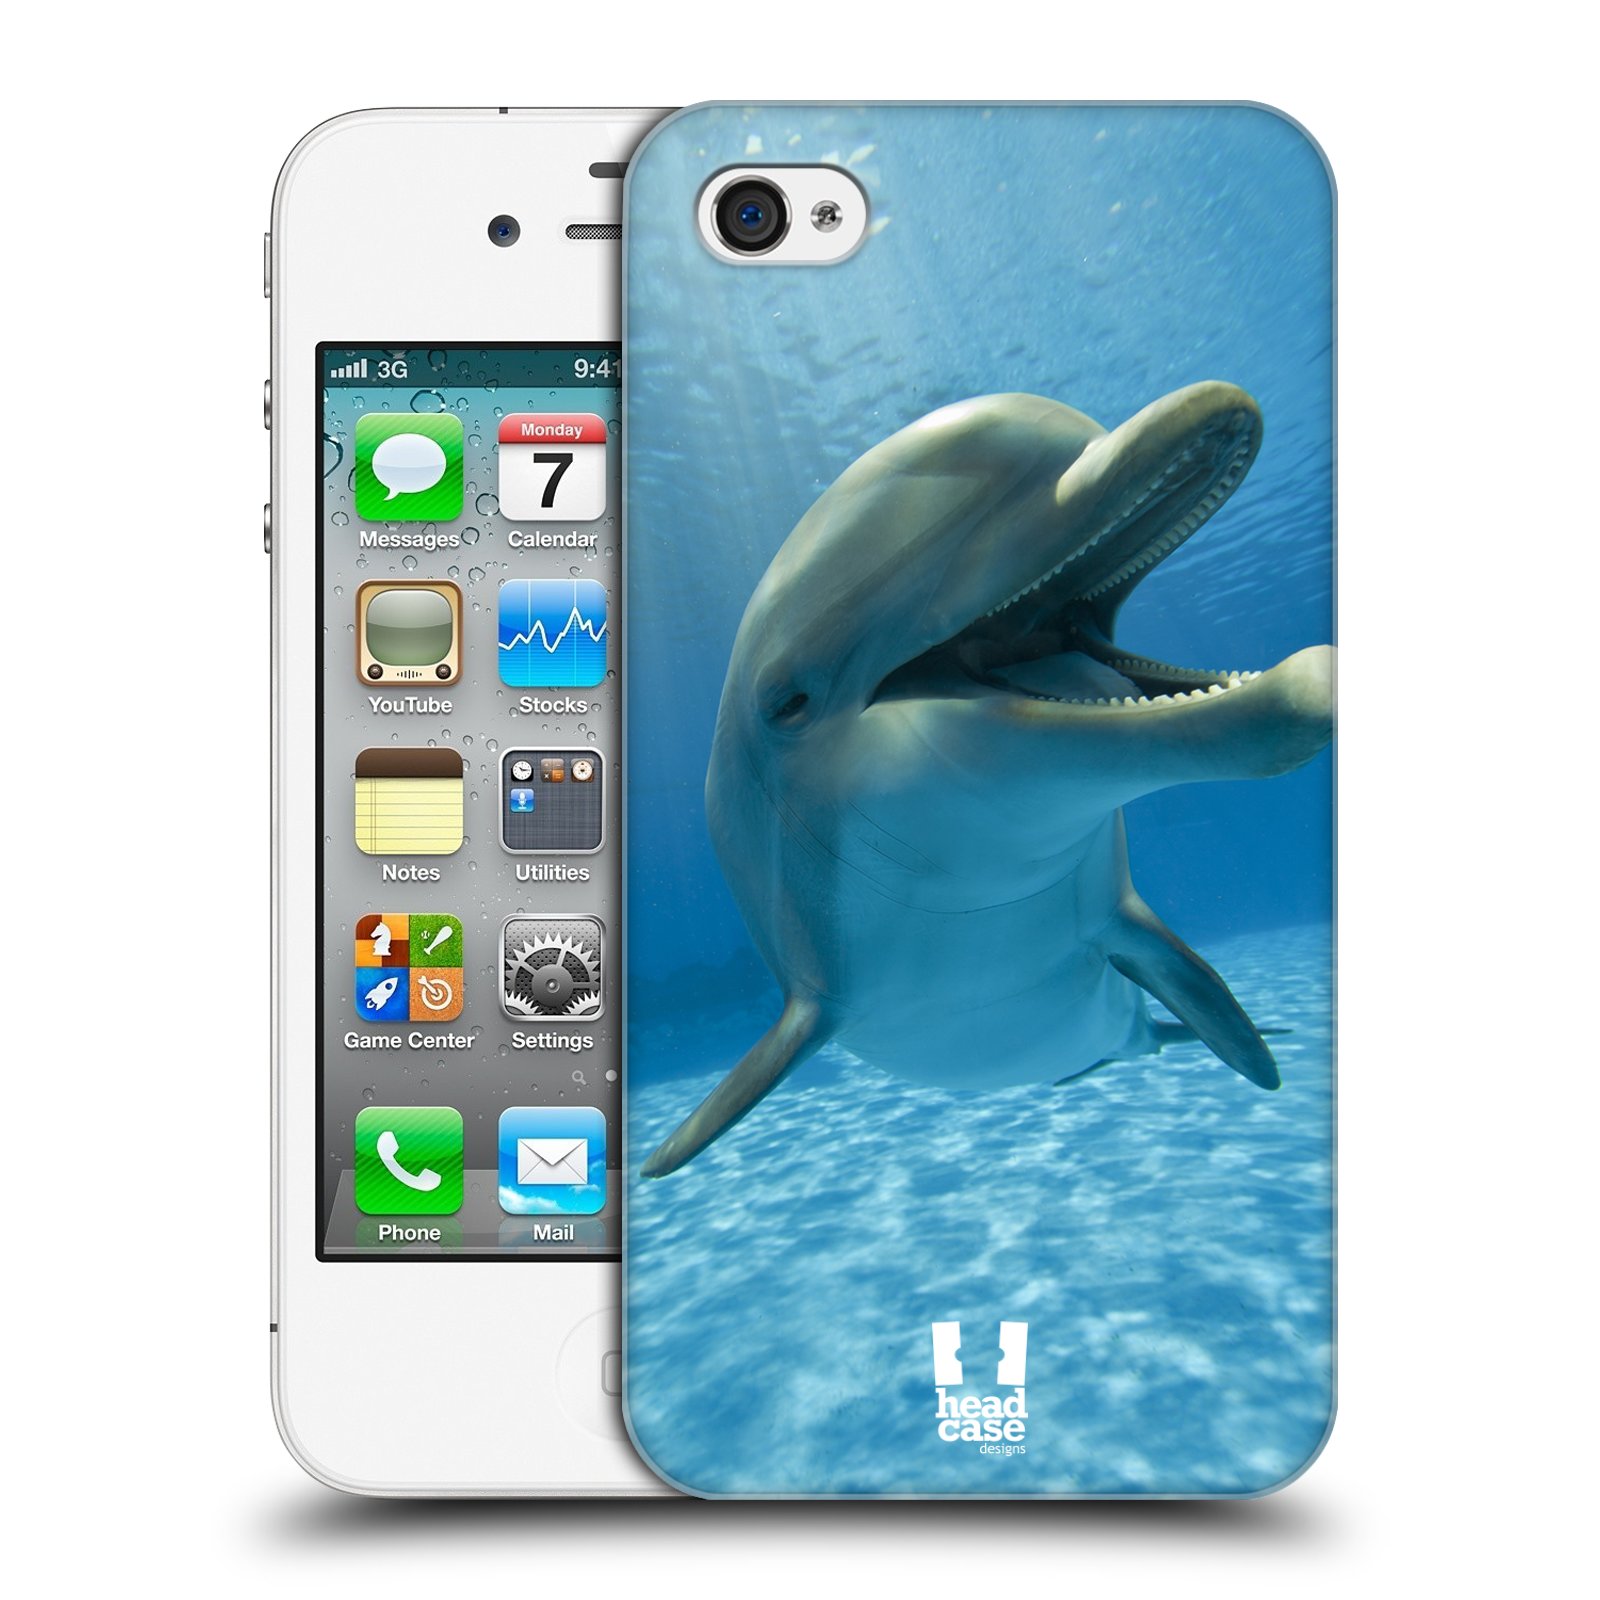 Zadní obal pro mobil Apple Iphone 4/4S - HEAD CASE - Svět zvířat delfín v moři